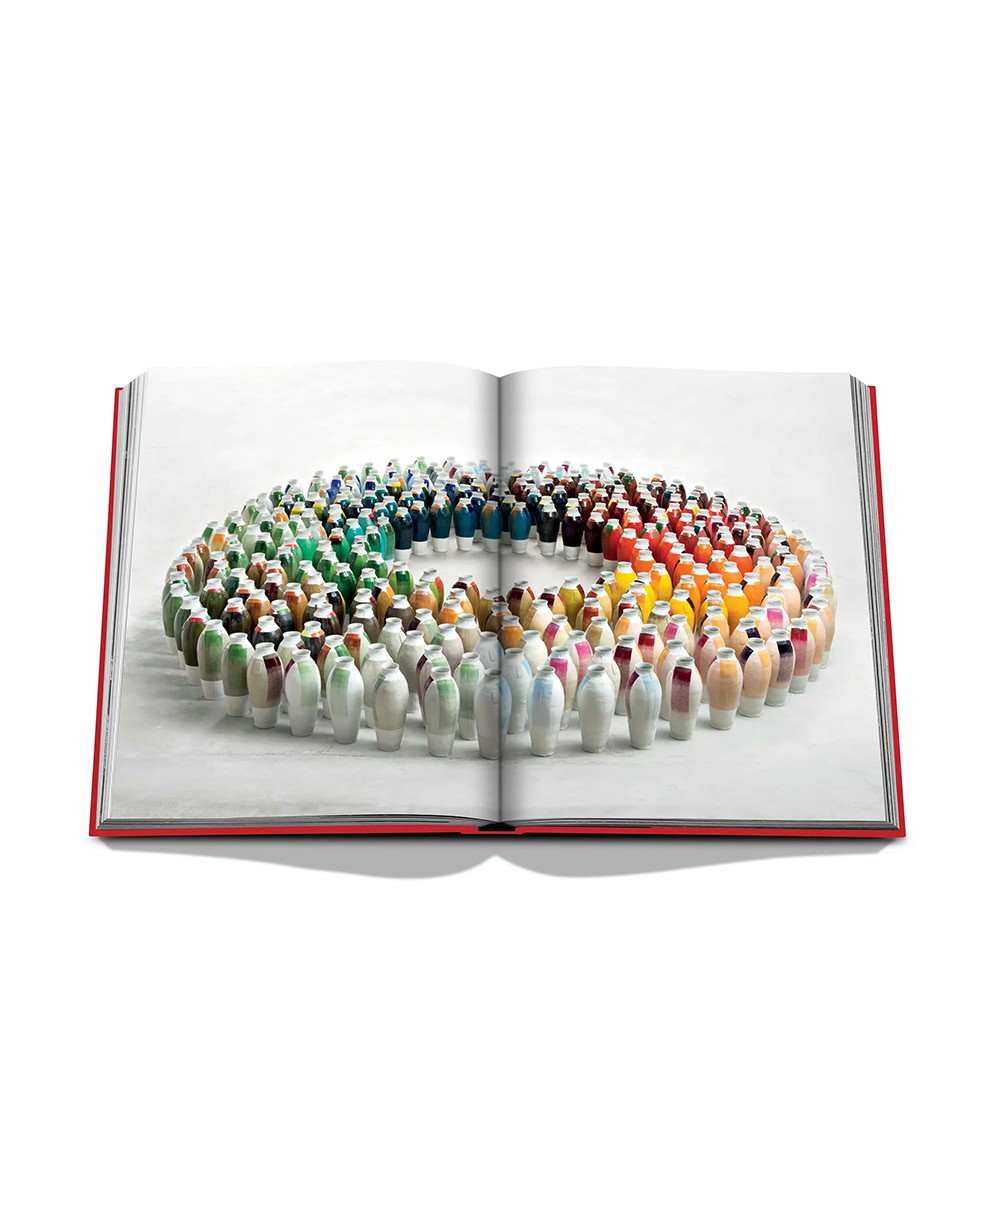 Aufgeschlagene Seite des Coffee Table Books „Bauhaus Style“ von Assouline im RAUM concept store 